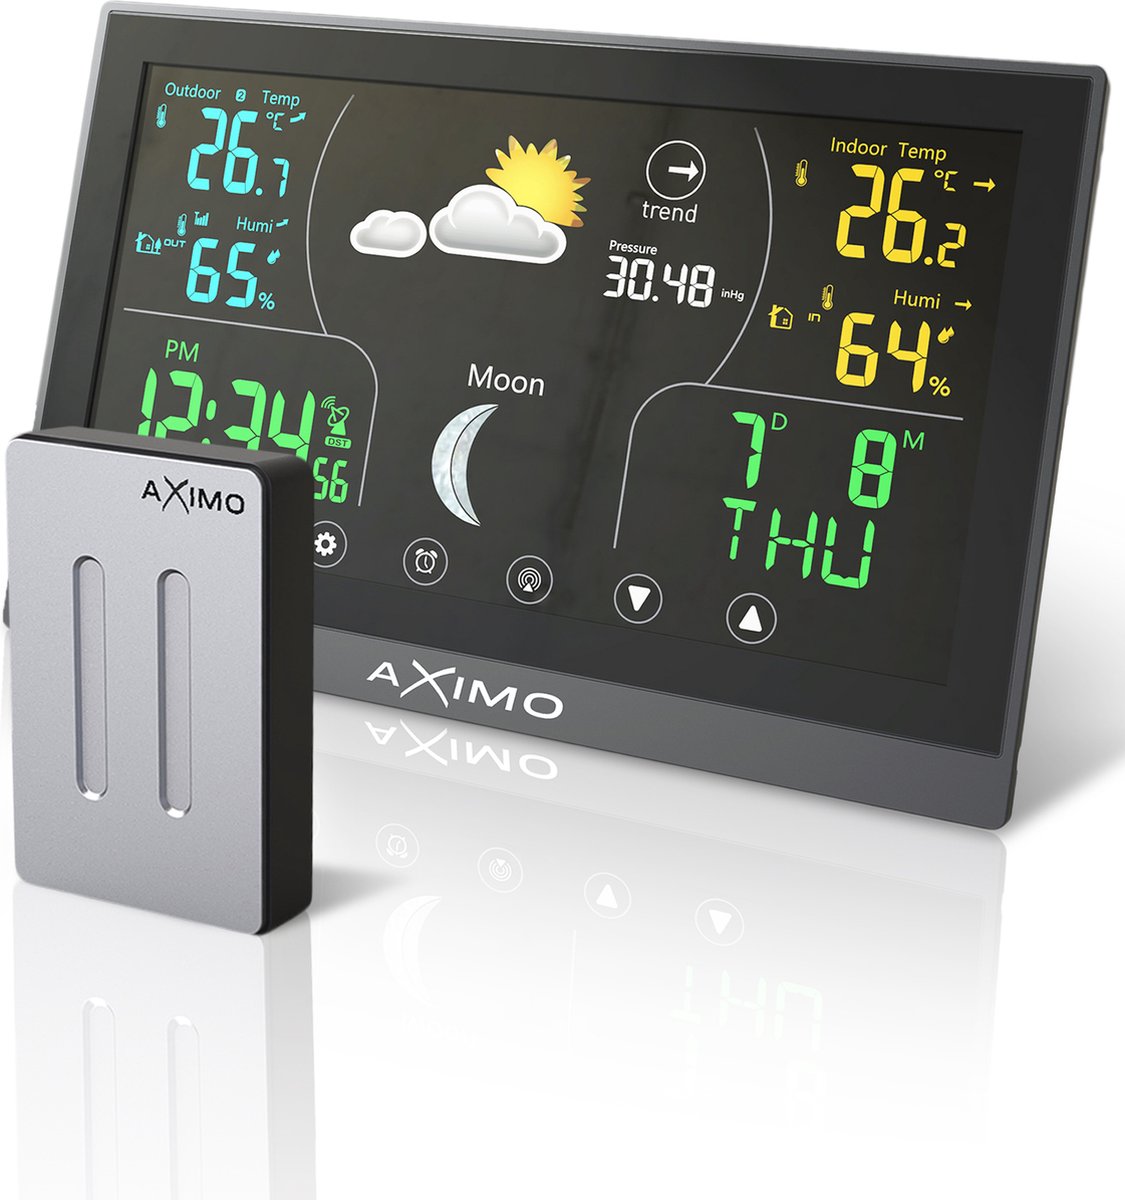 AXIMO Weerstation binnen en buiten – Draadloos weerstation met buitensensor - Touchscreen kleurendisplay - Binnen- en buitentemperatuur - Barometer - Weersvoorspelling